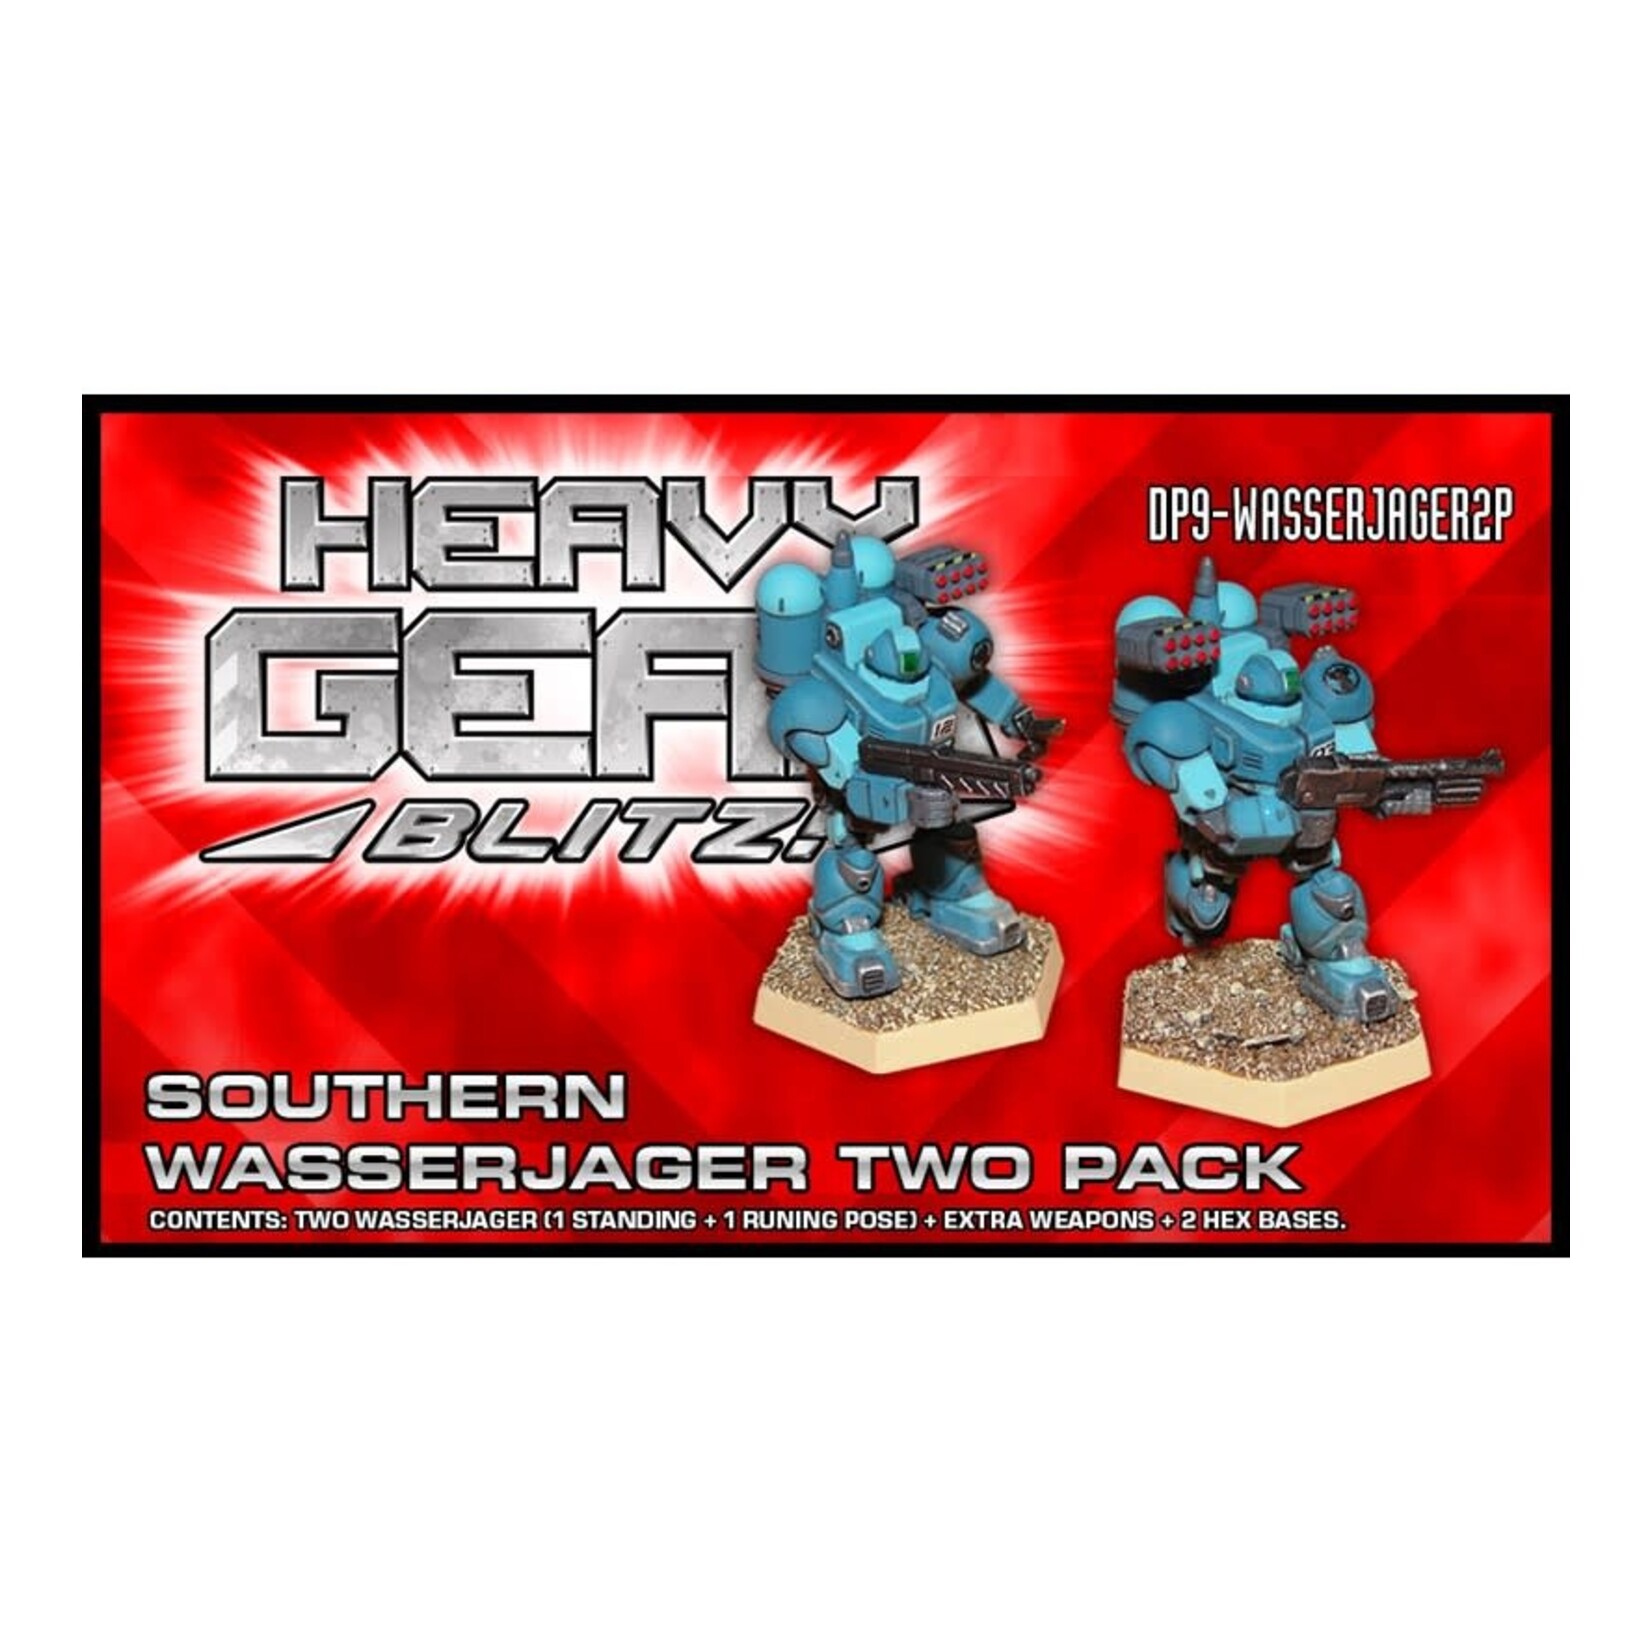 Dream Pod 9 Heavy Gear Blitz - Southern WasserJager Two Pack